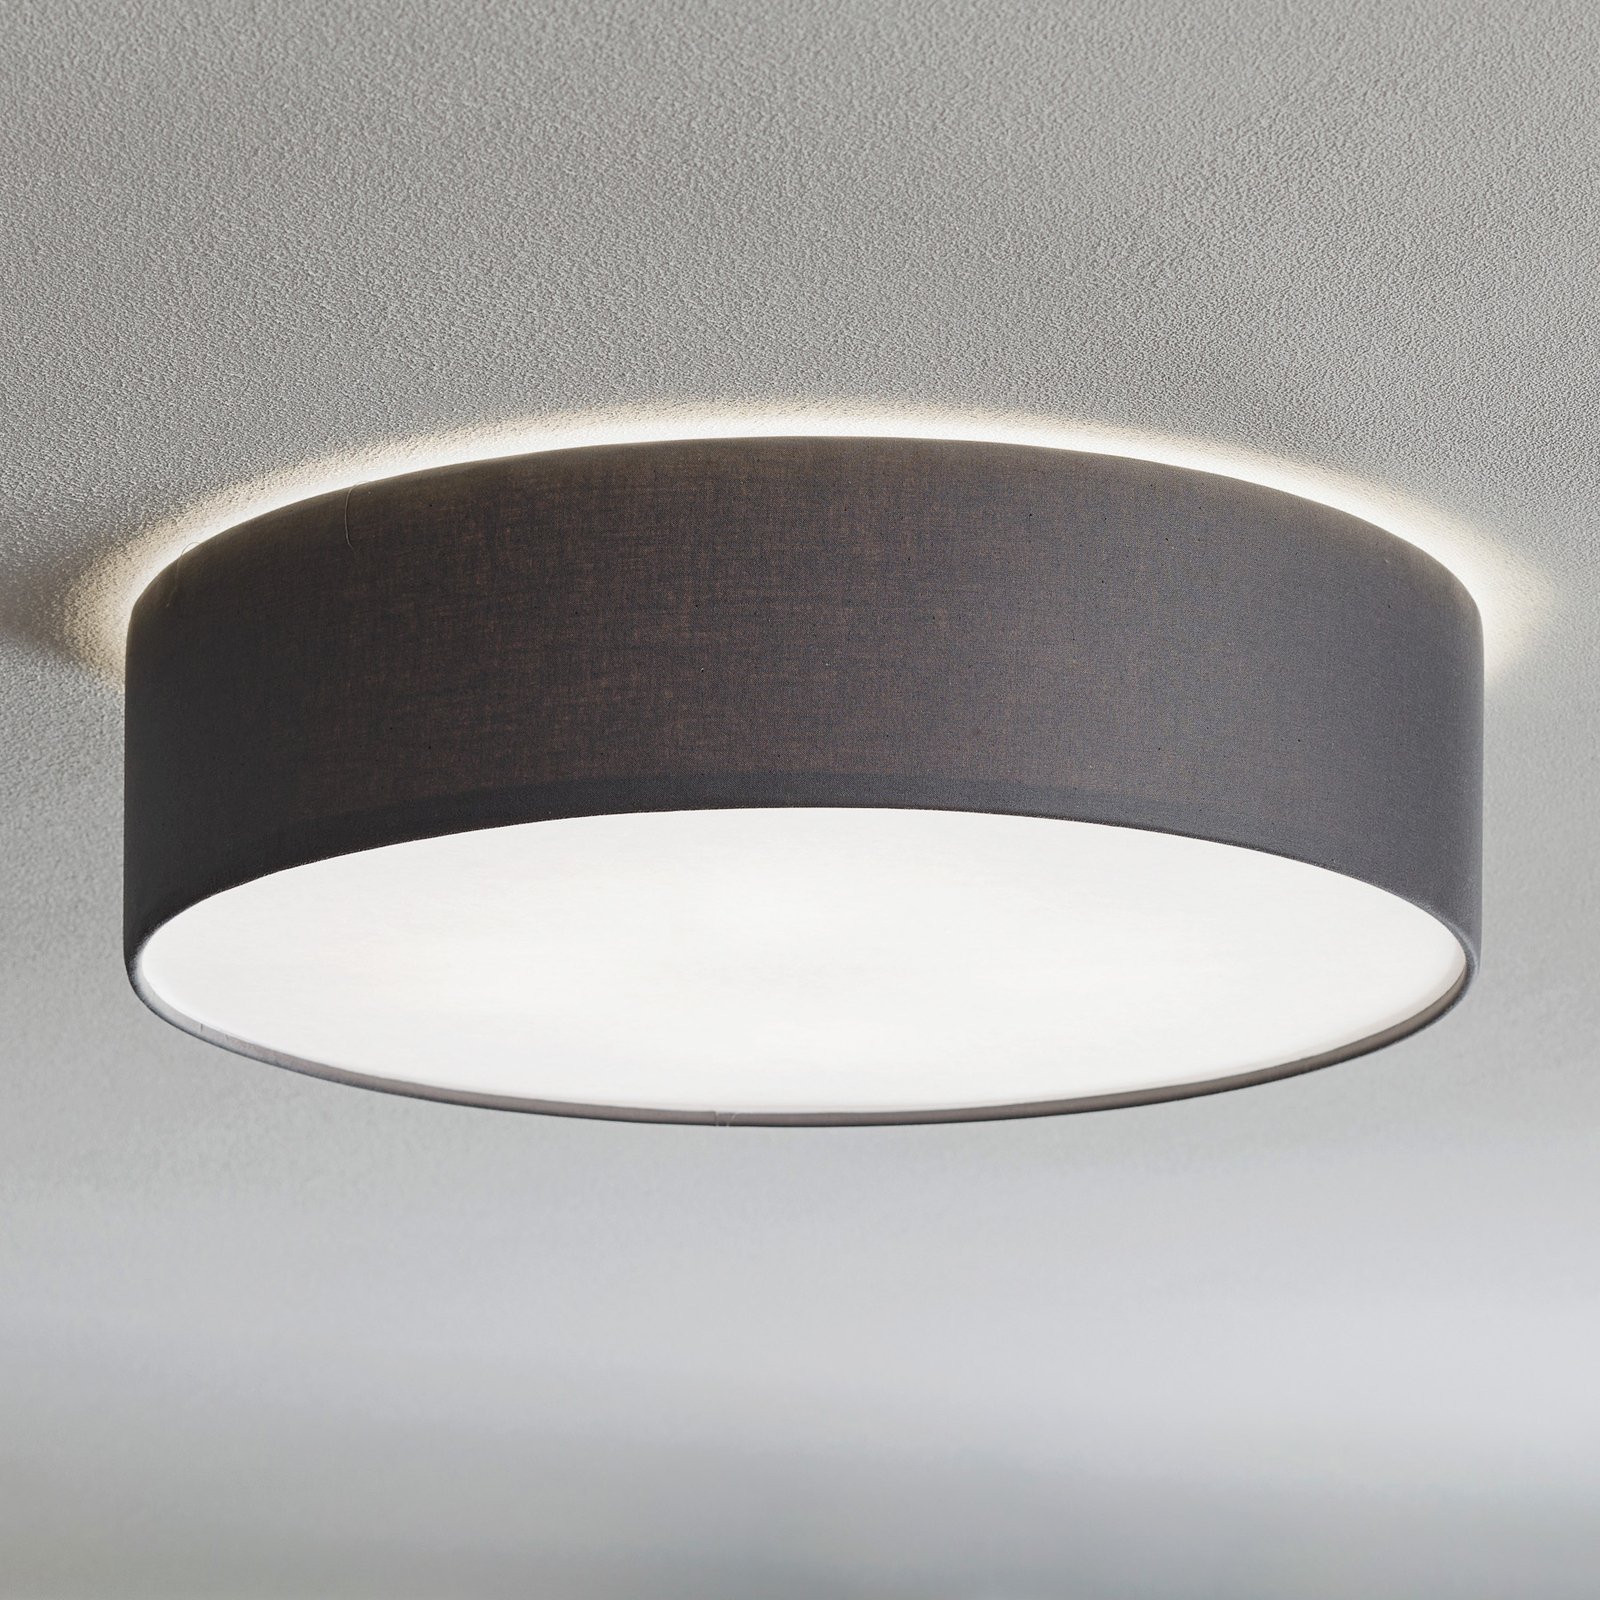 Rondo ceiling light, grey, Ø 50 cm